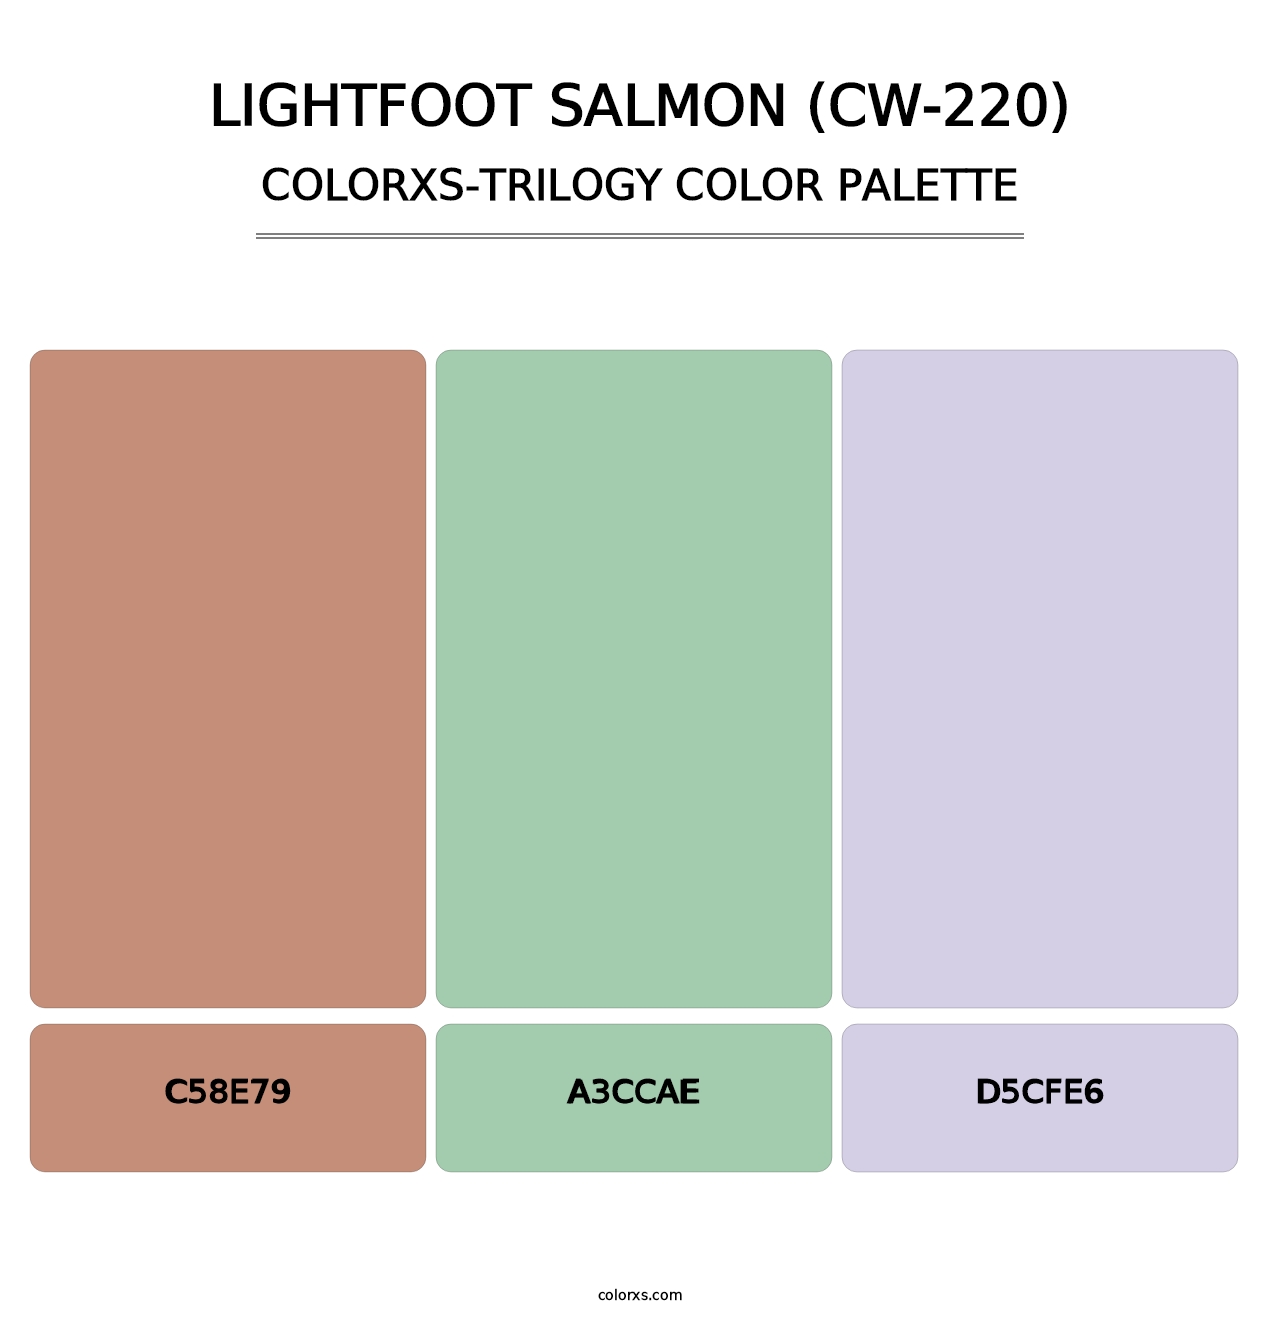 Lightfoot Salmon (CW-220) - Colorxs Trilogy Palette